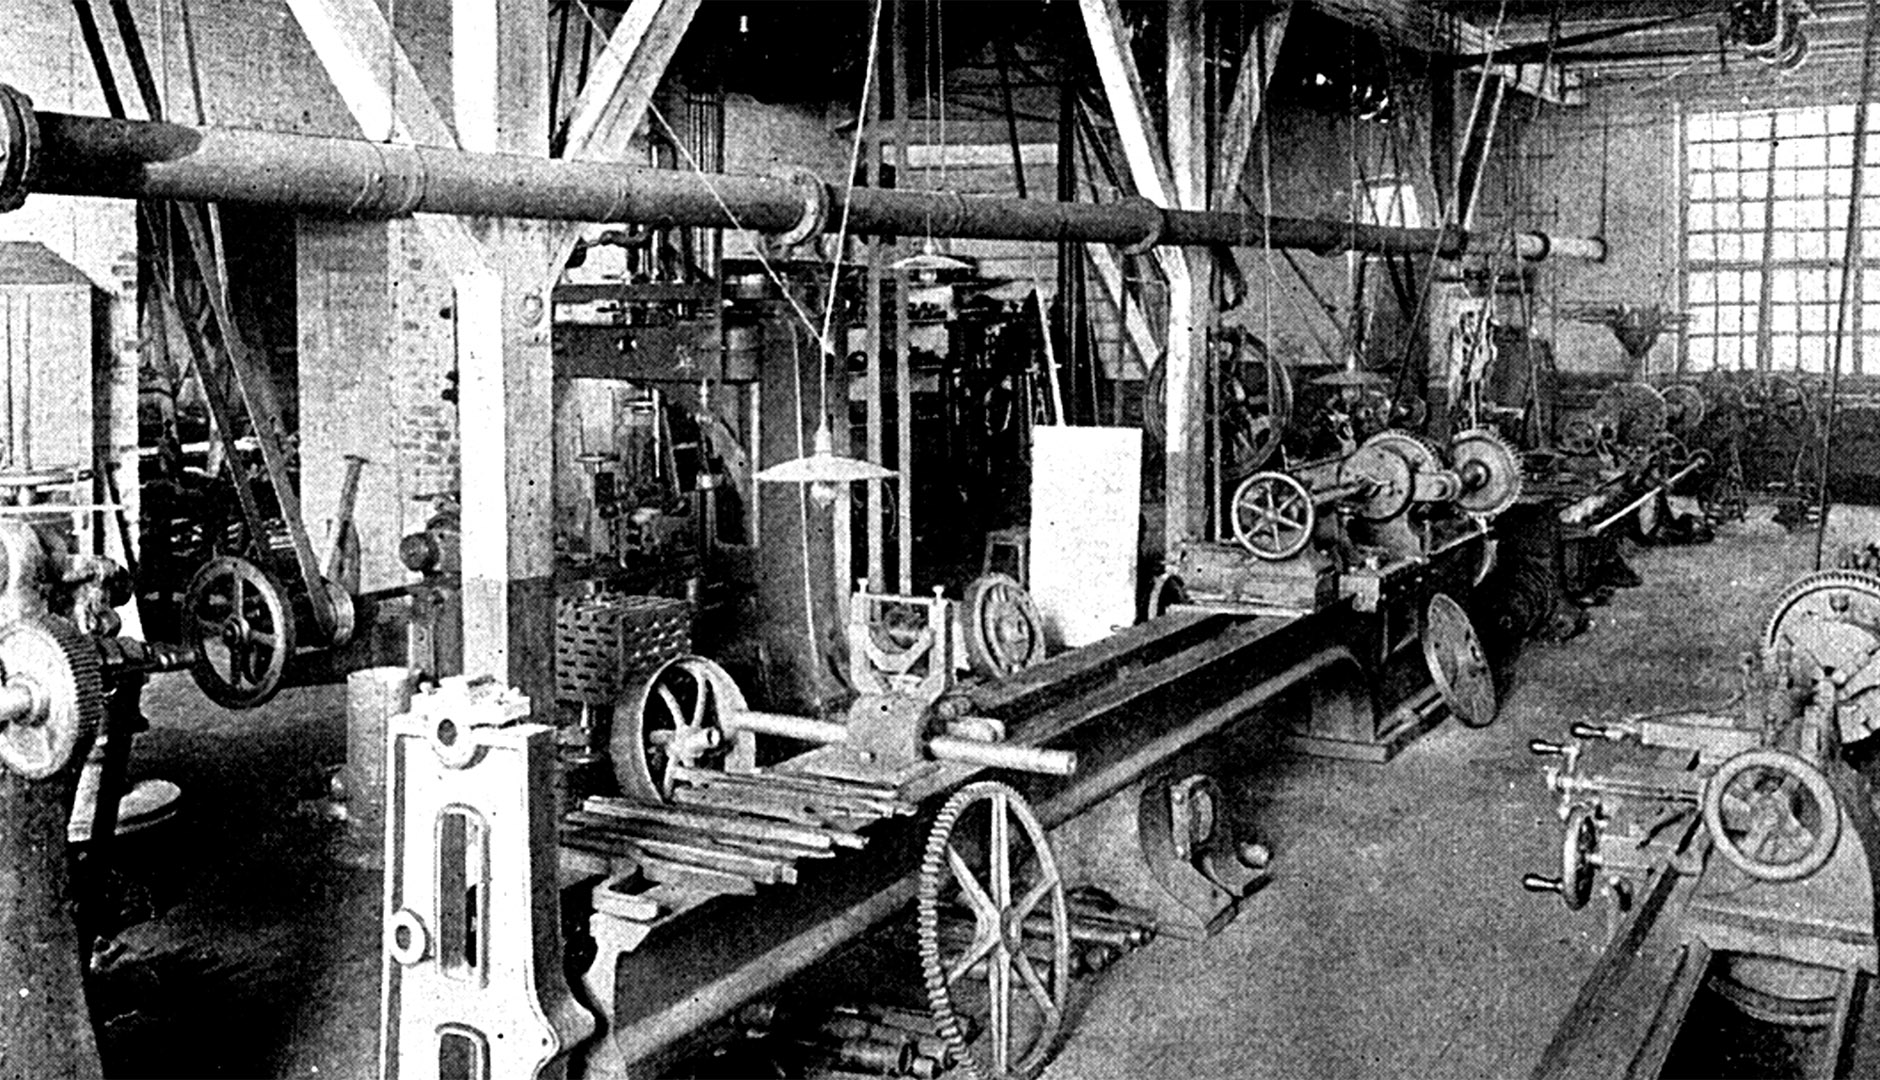 Gamlestadens fabriker en bild från förr i svartvitt över insidan av en fabrikslokal